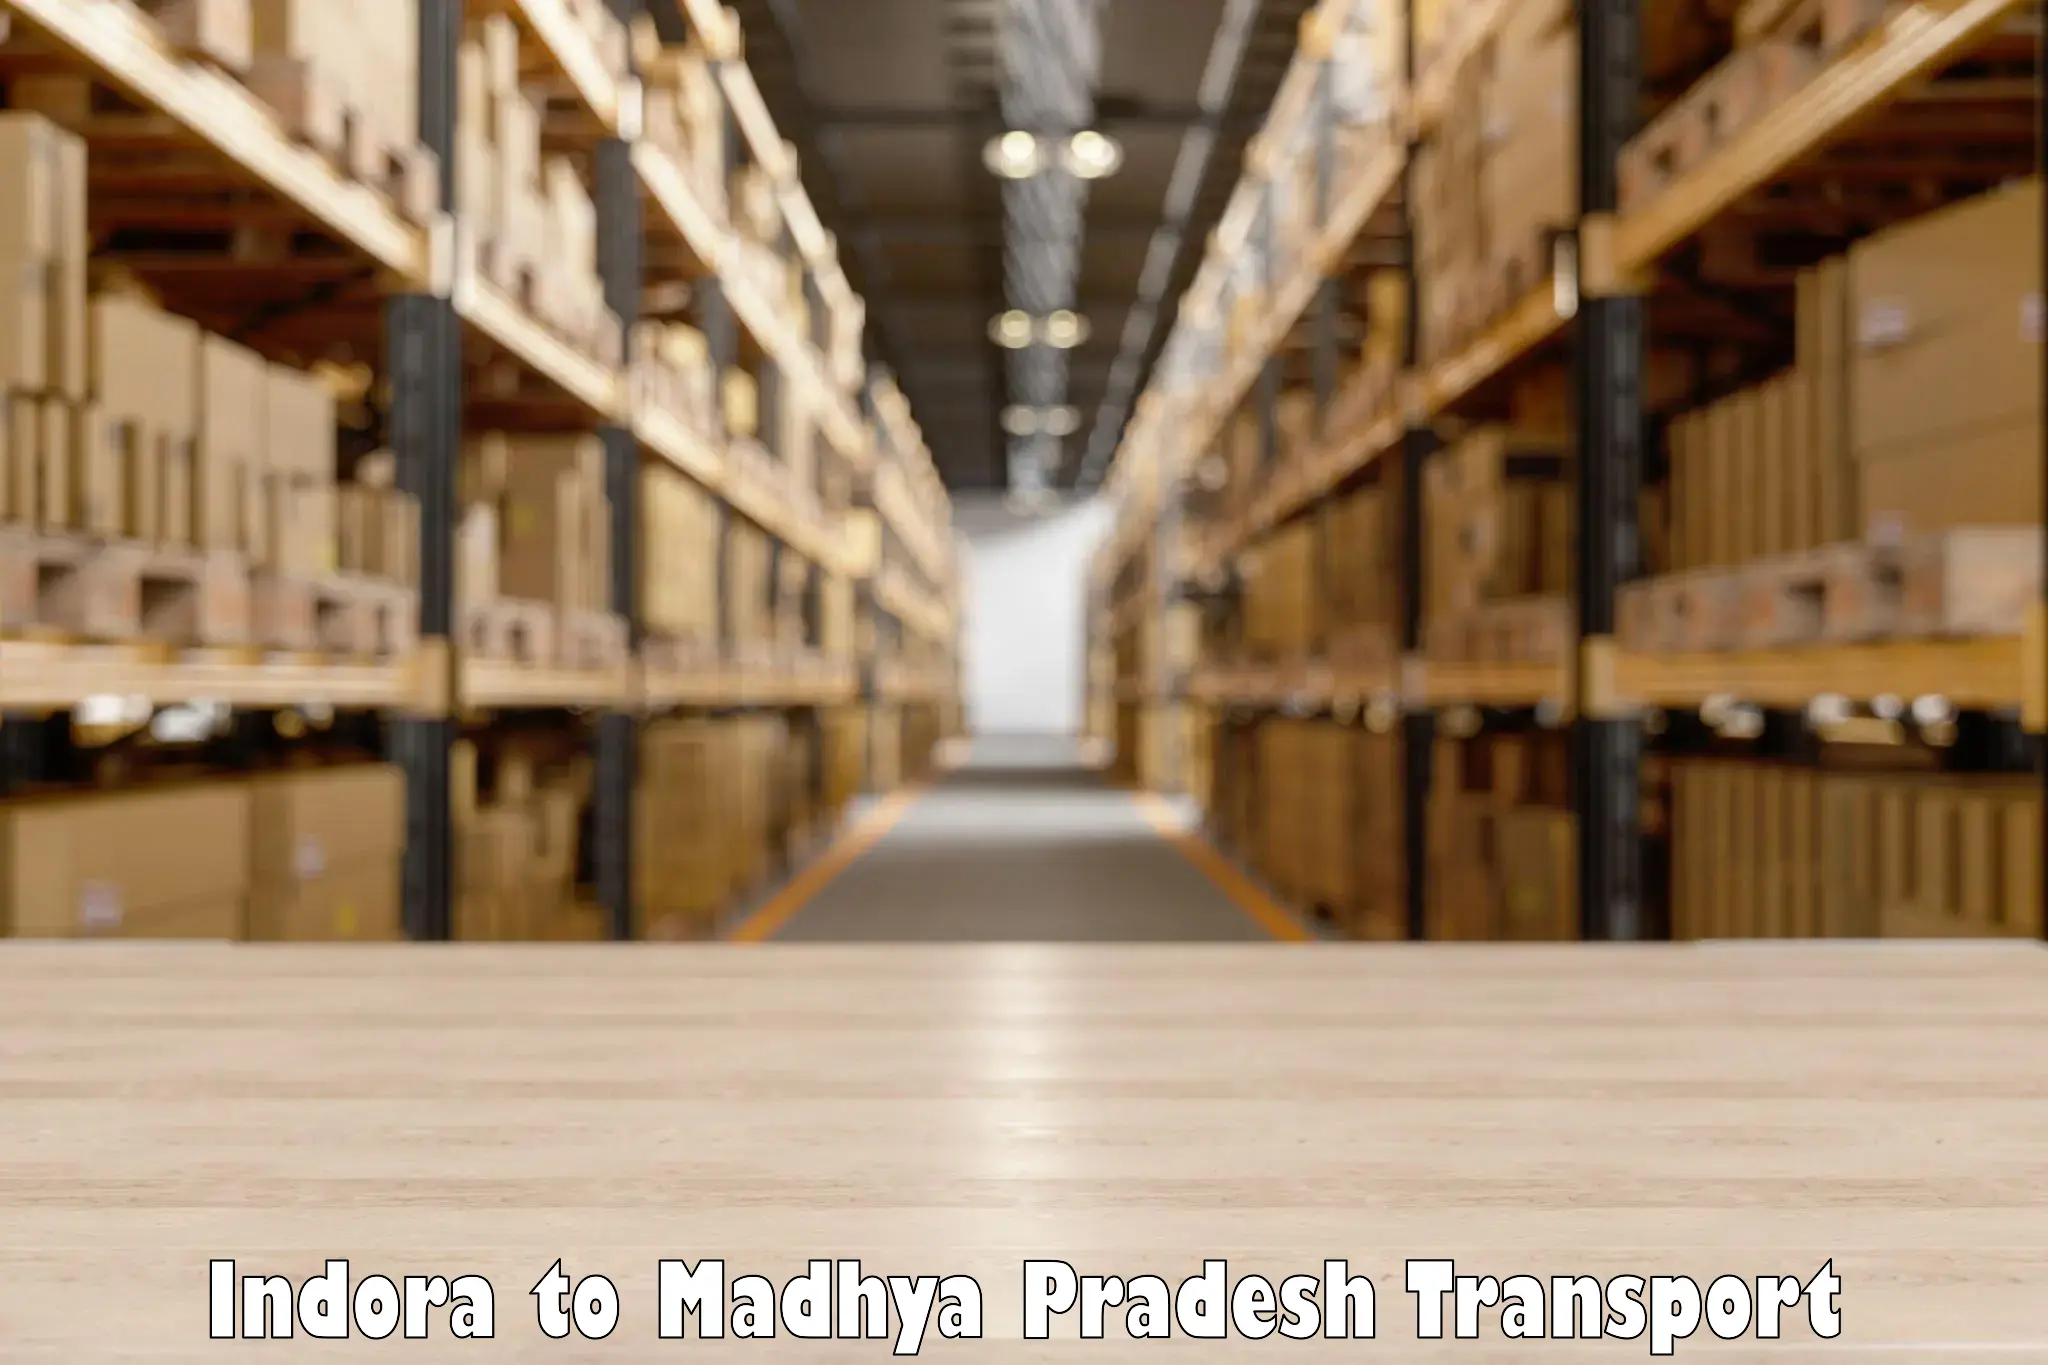 Transport shared services in Indora to Ganj Basoda